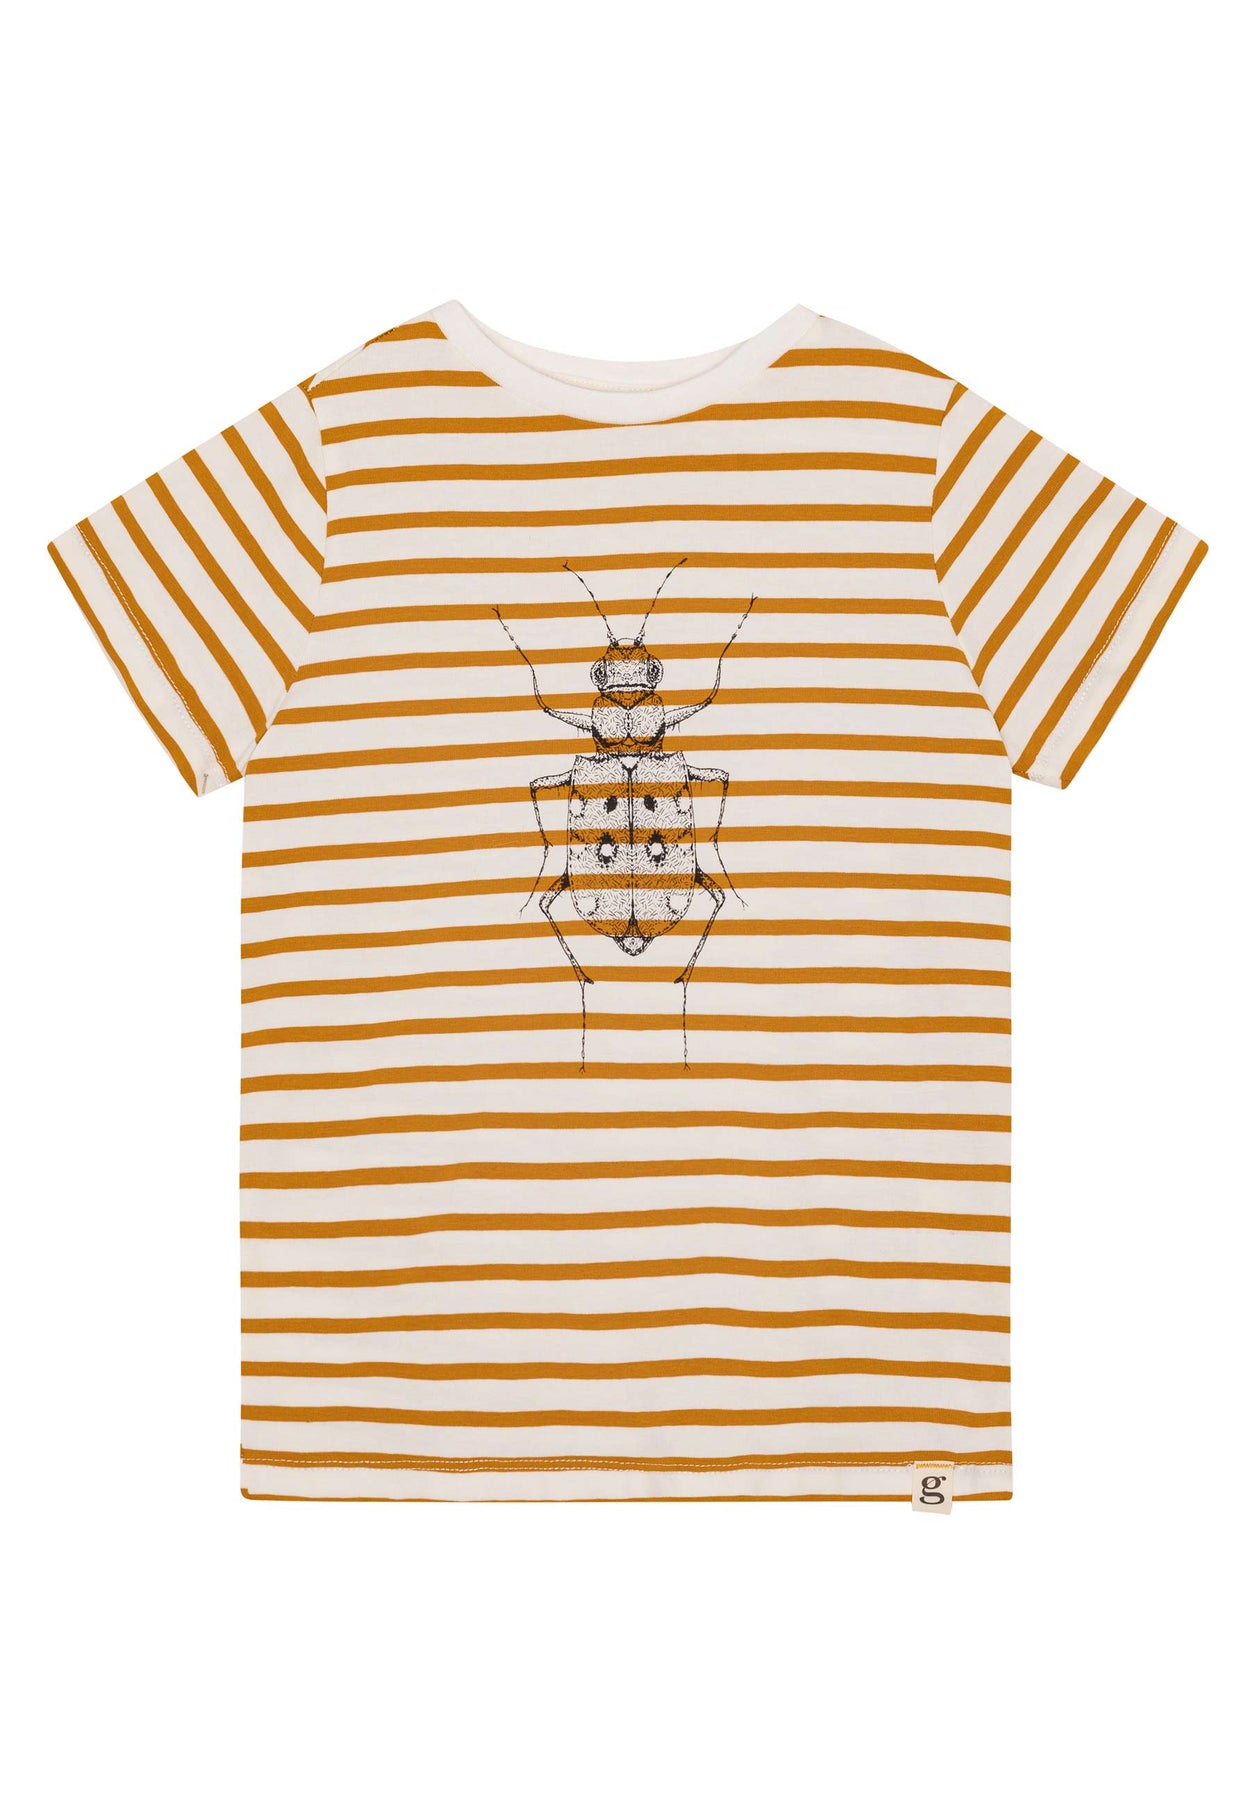 GROBUND Chris t-shirten mini - den med gyldne striber og sandspringer